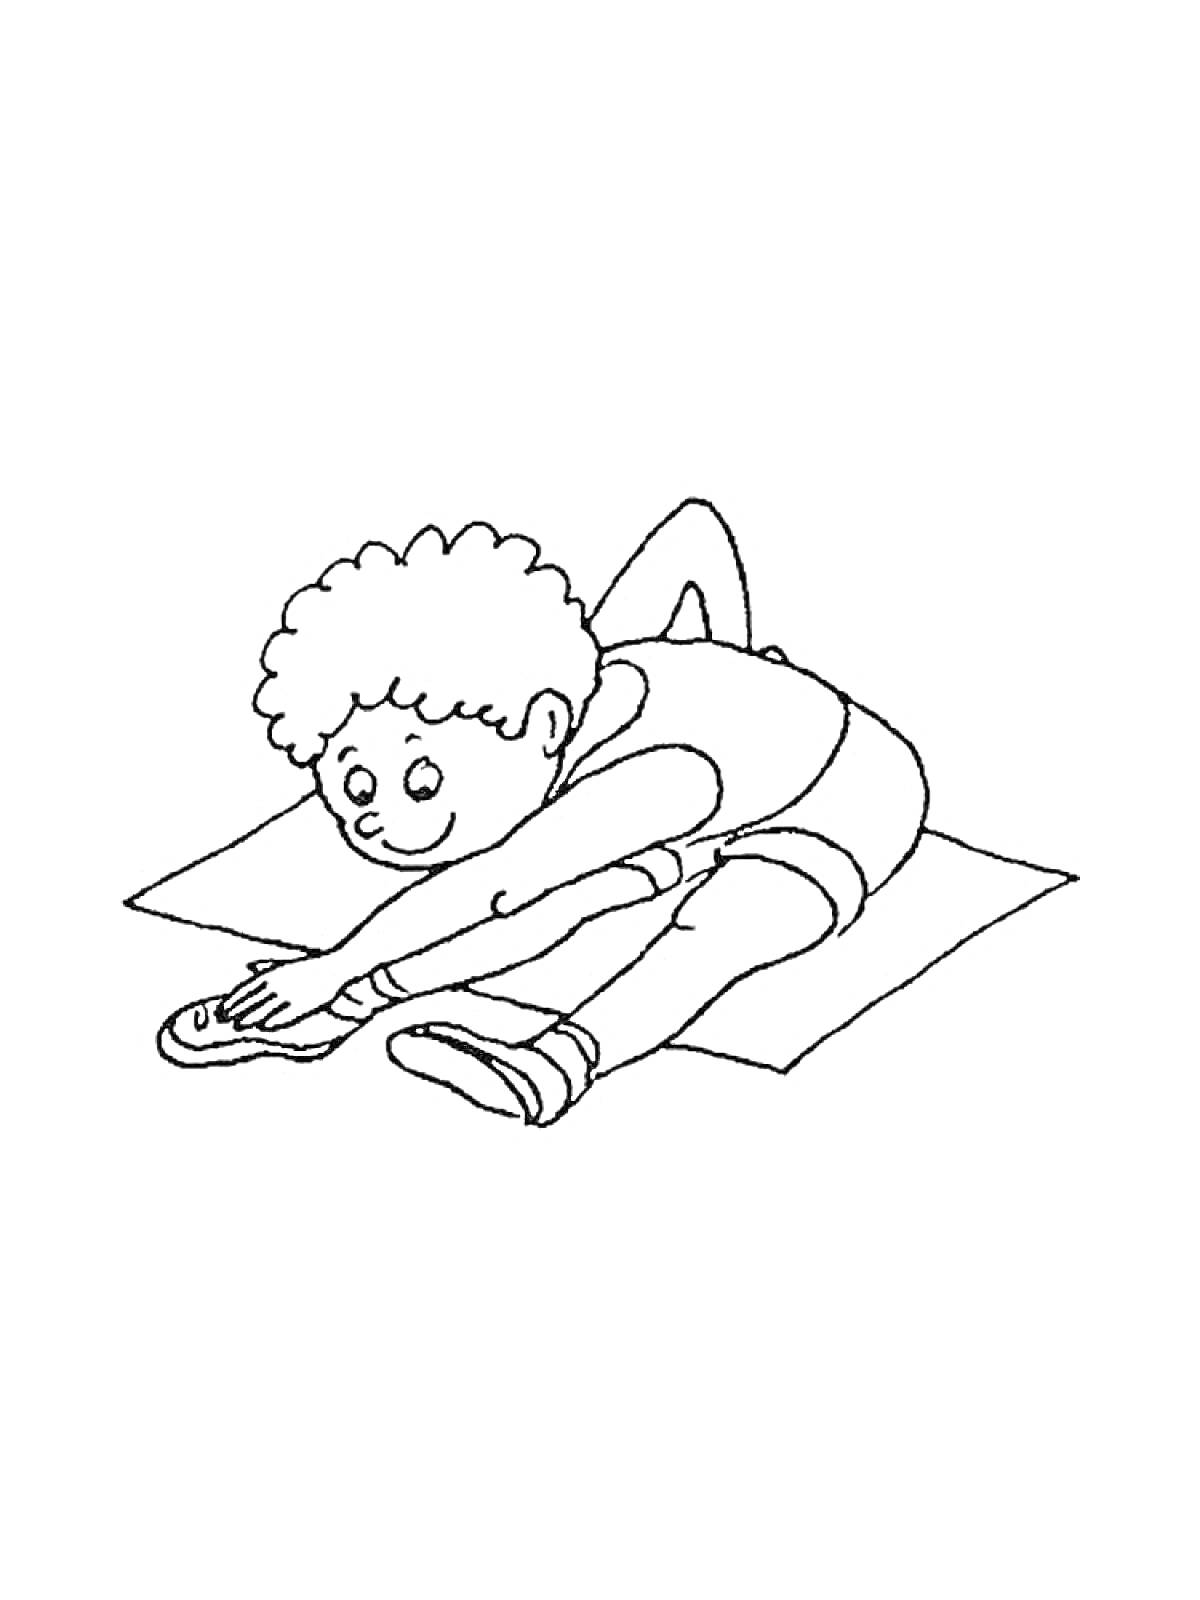 Мальчик делает растяжку на коврике